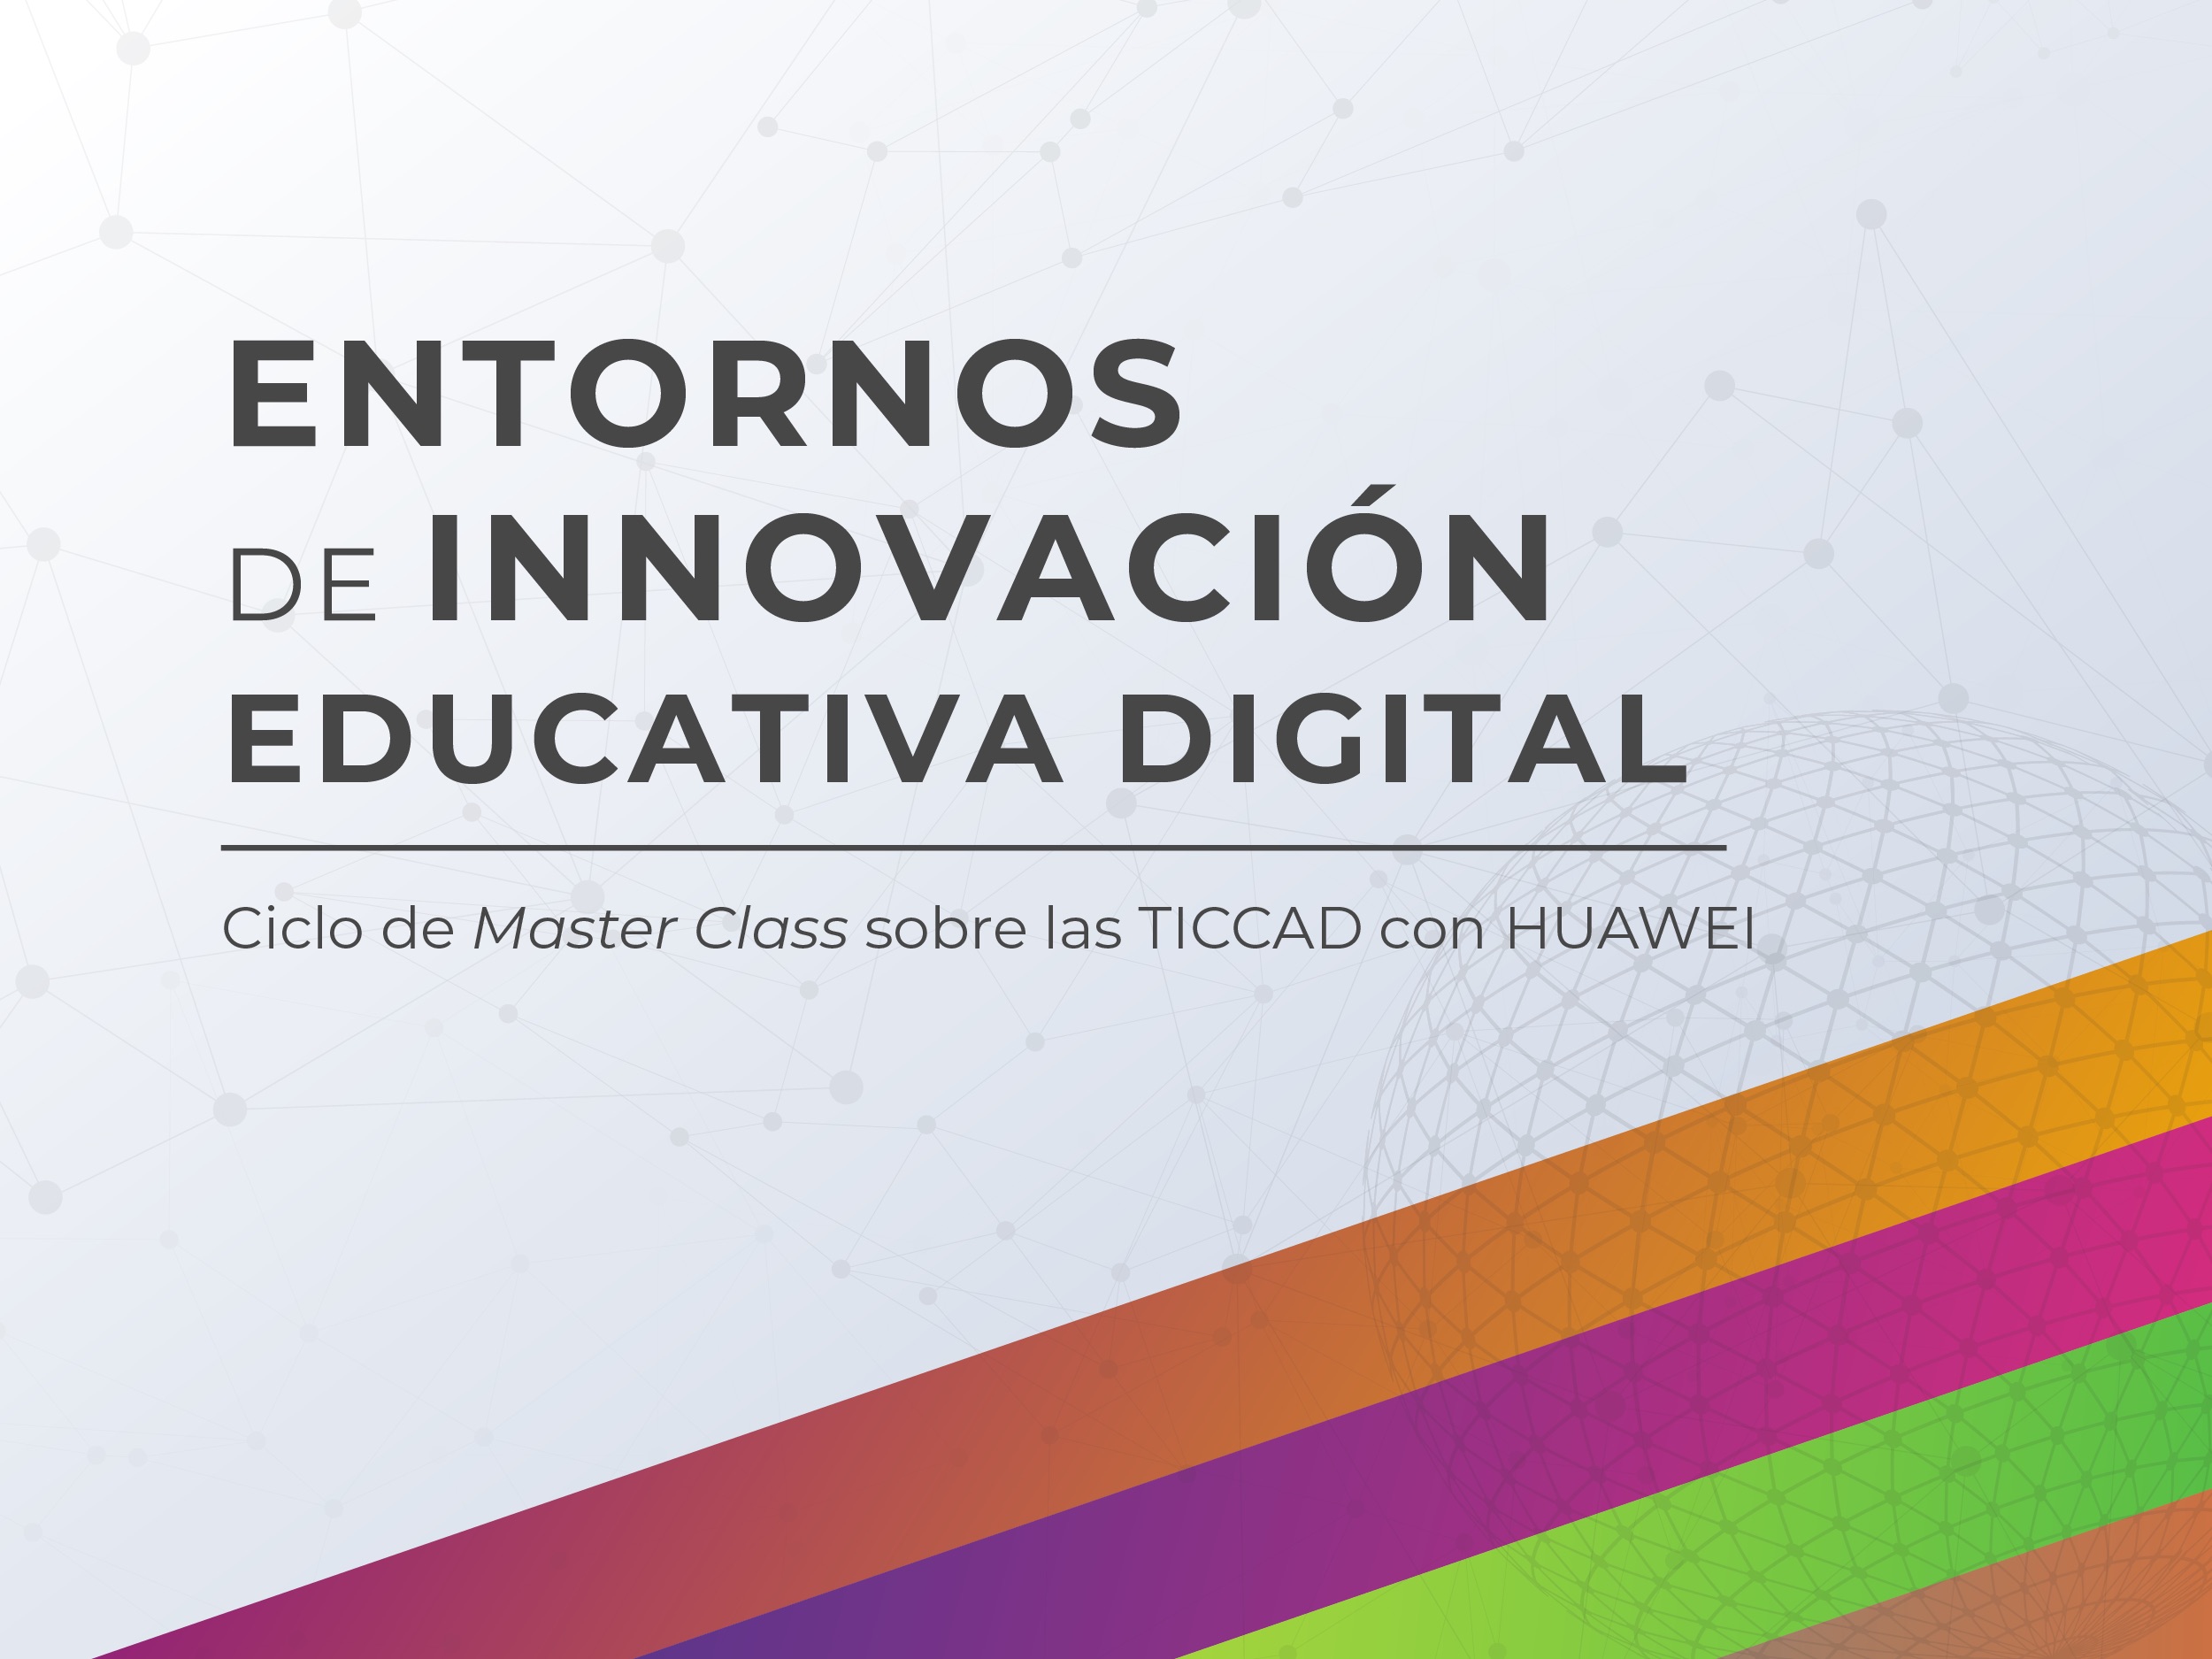 Entornos de innovación educativa digital